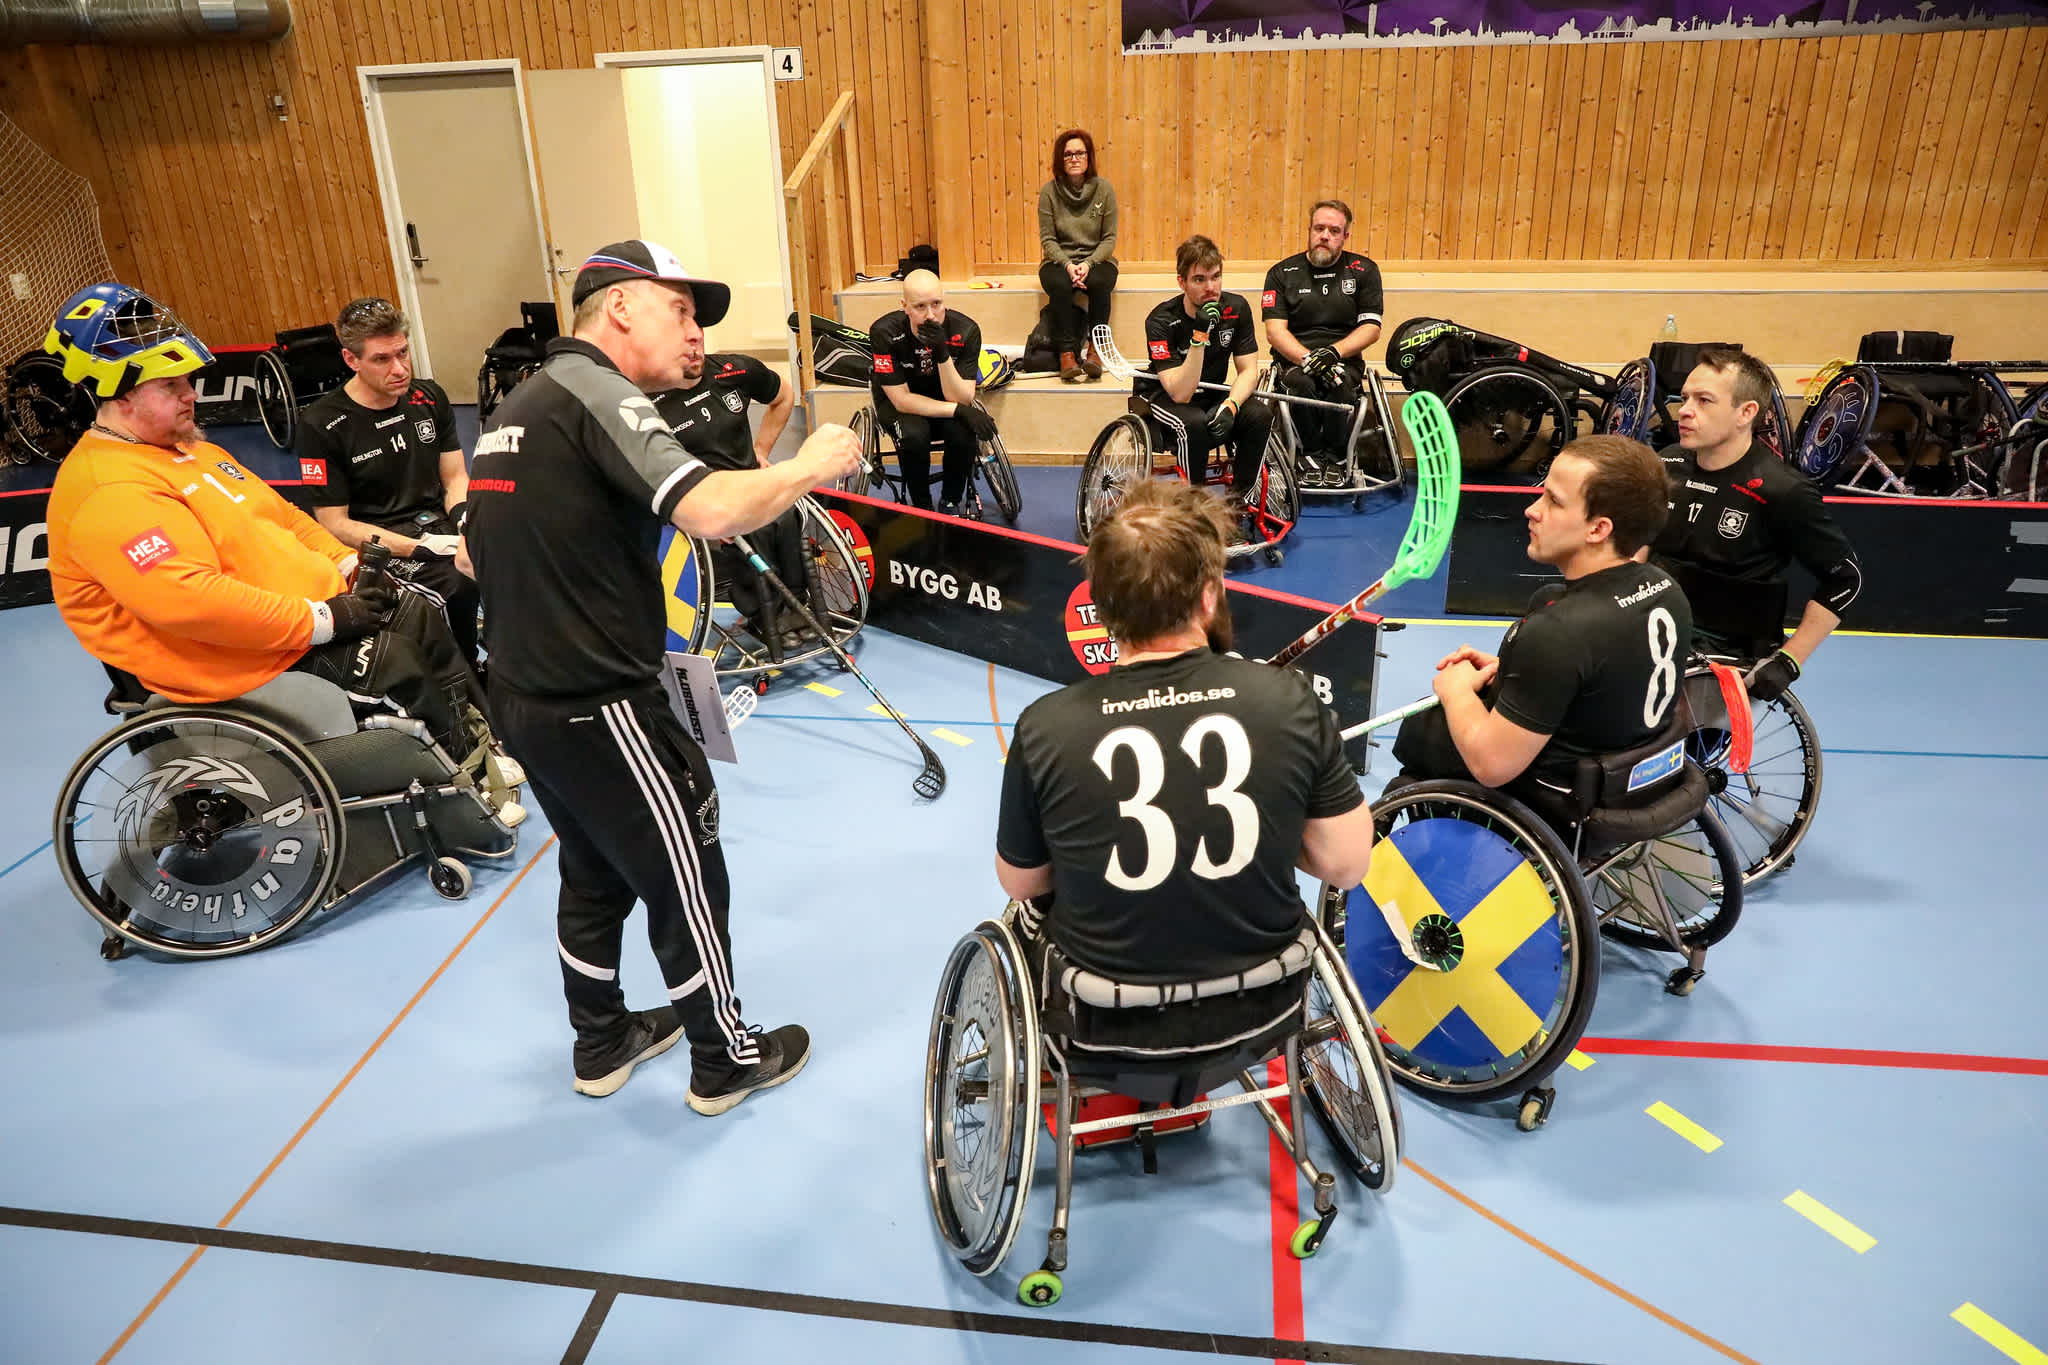 En ledare instruerar spelare under en match i rullstolsinnebandy.